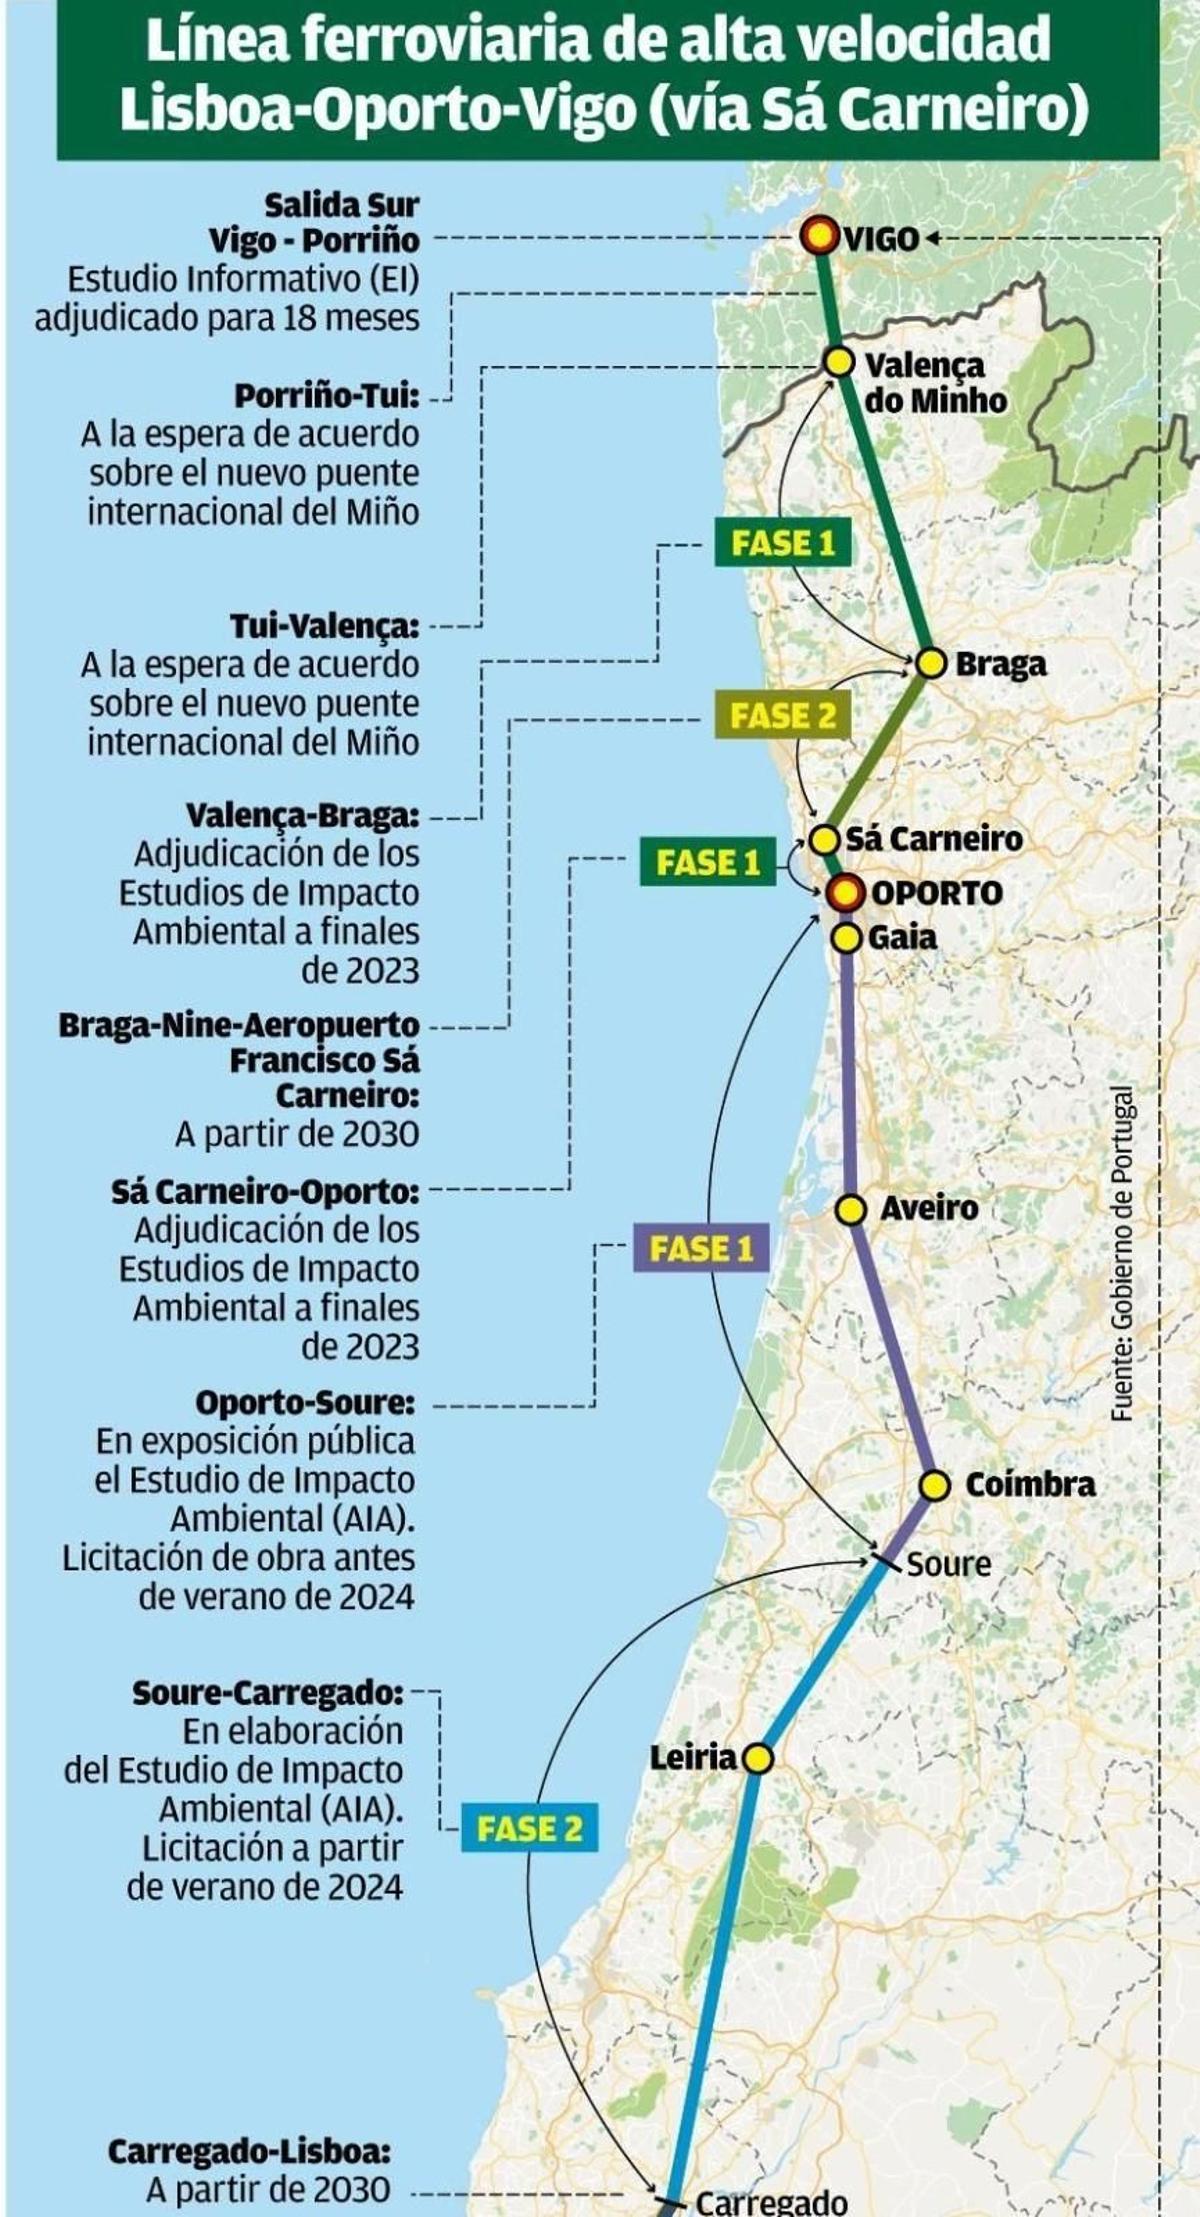 Línea ferroviaria de alta velocidad Lisboa-Oporto-Vigo (vía Sá Carneiro).